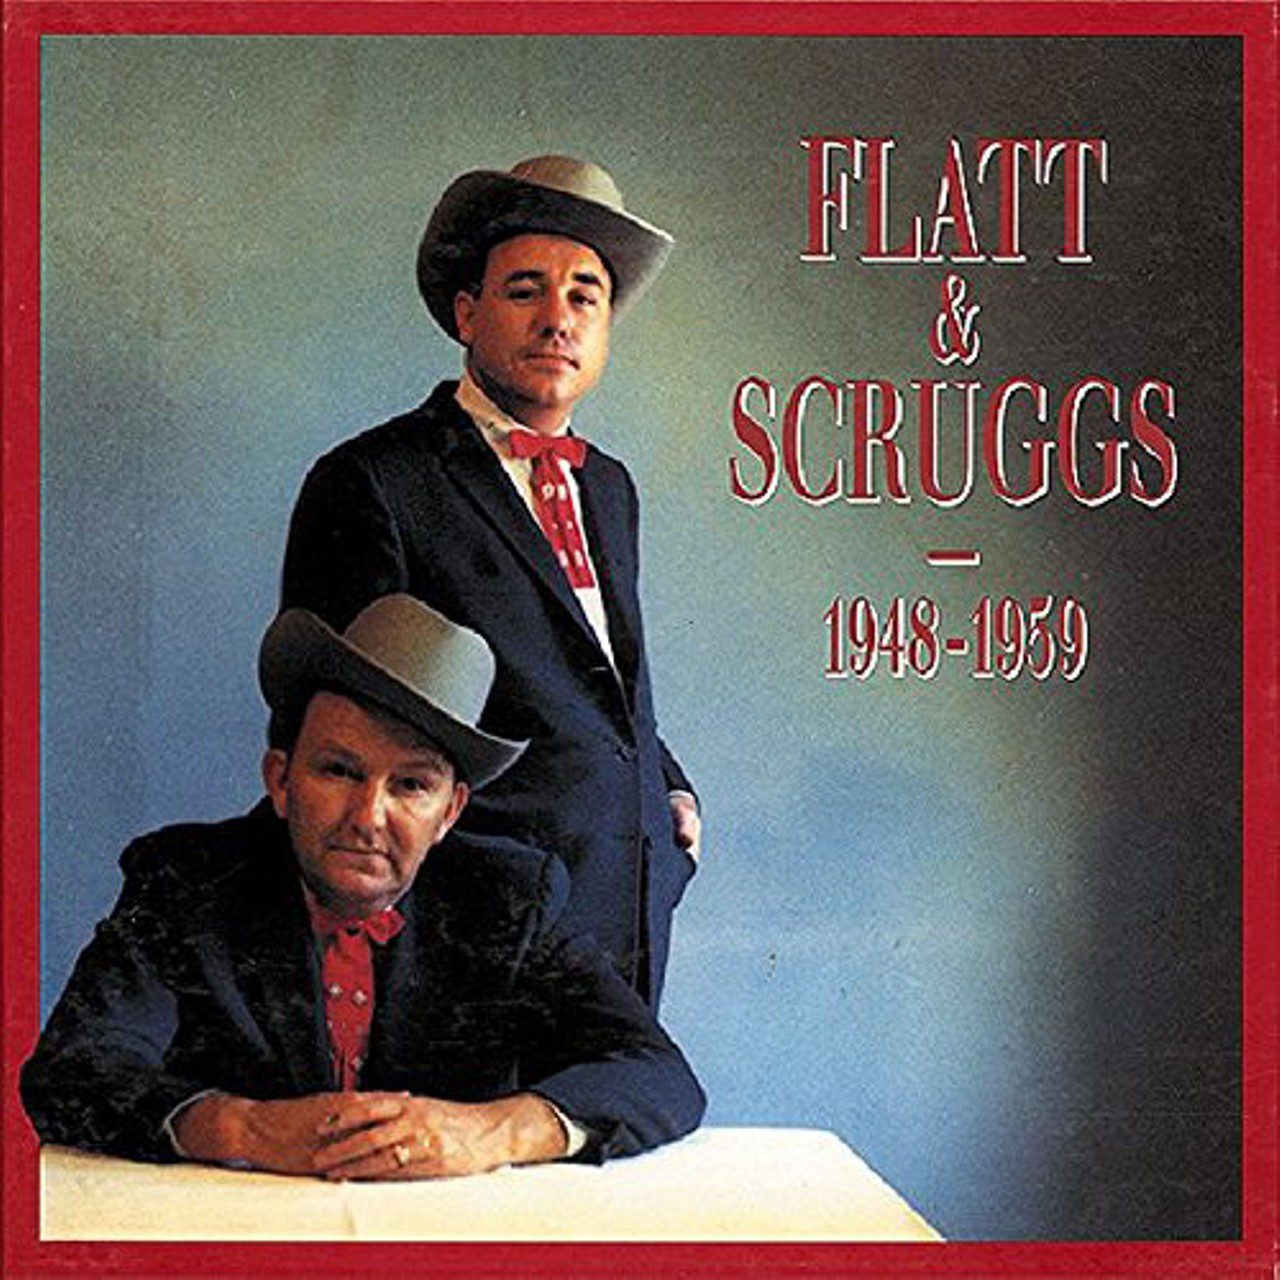 Flatt & Scruggs – 1948 – 1959 cover album